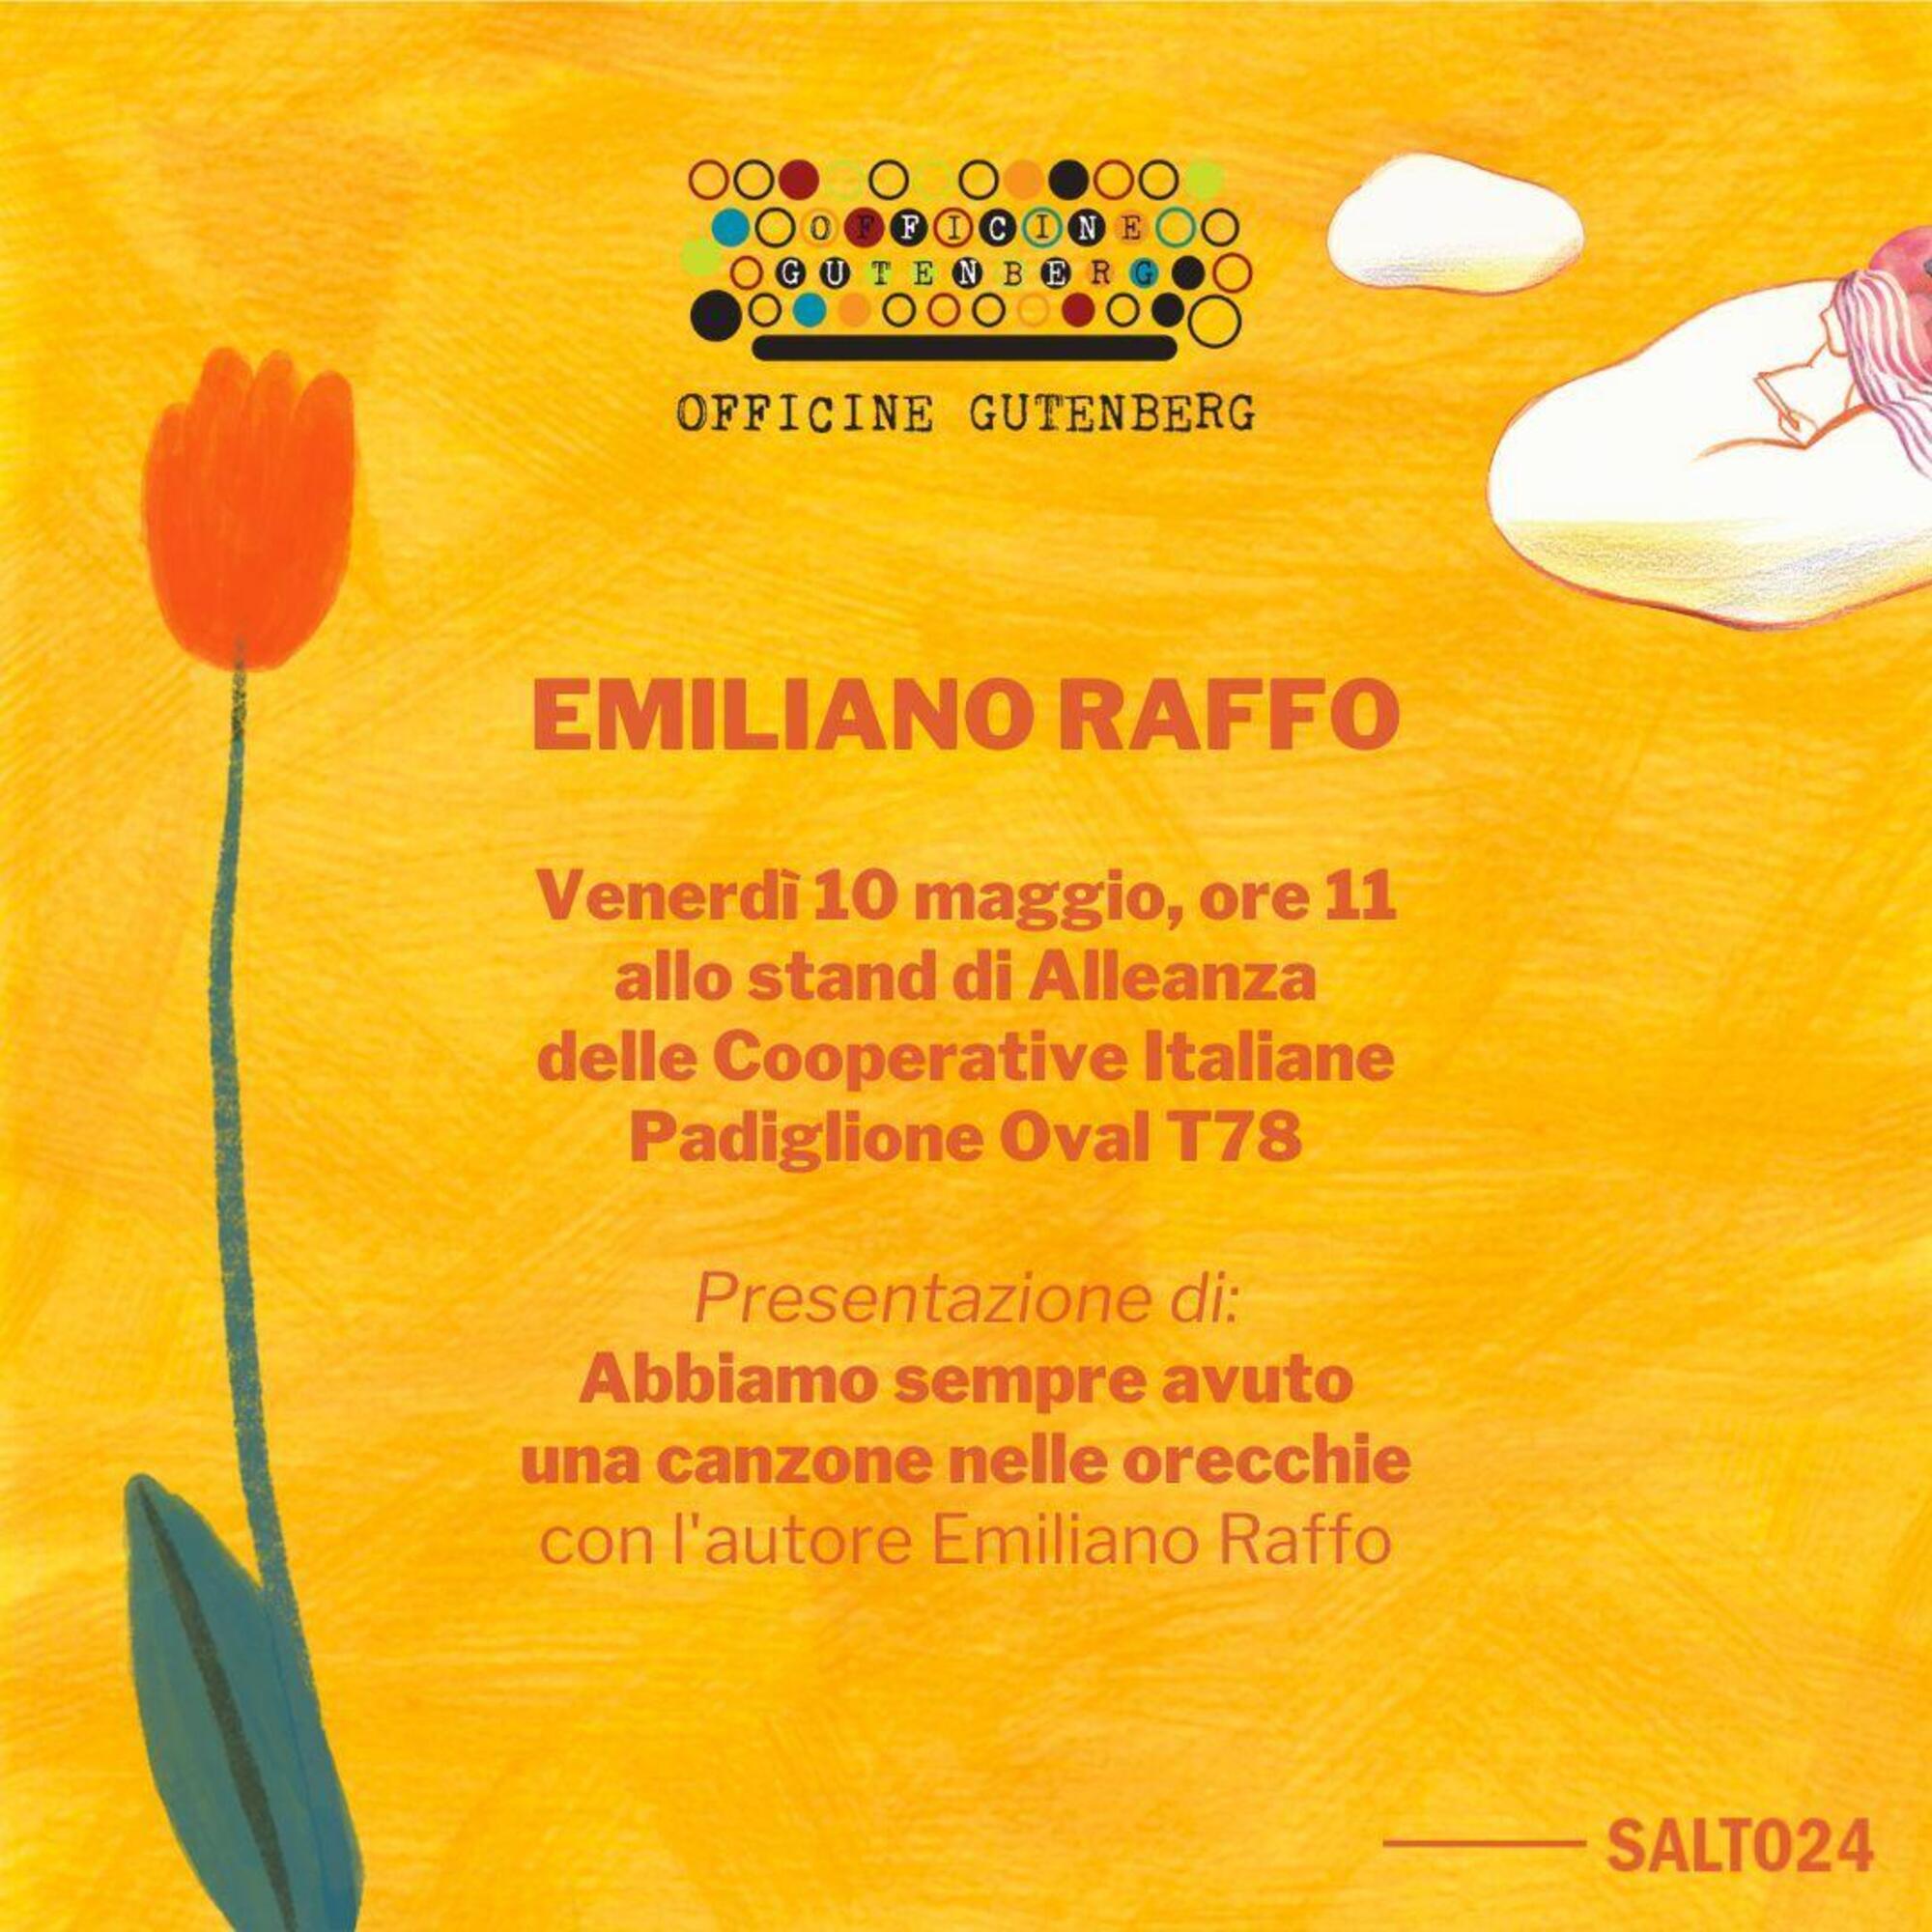 La presentazione del libro di Emiliano Raffo al Salone del libro di Torino